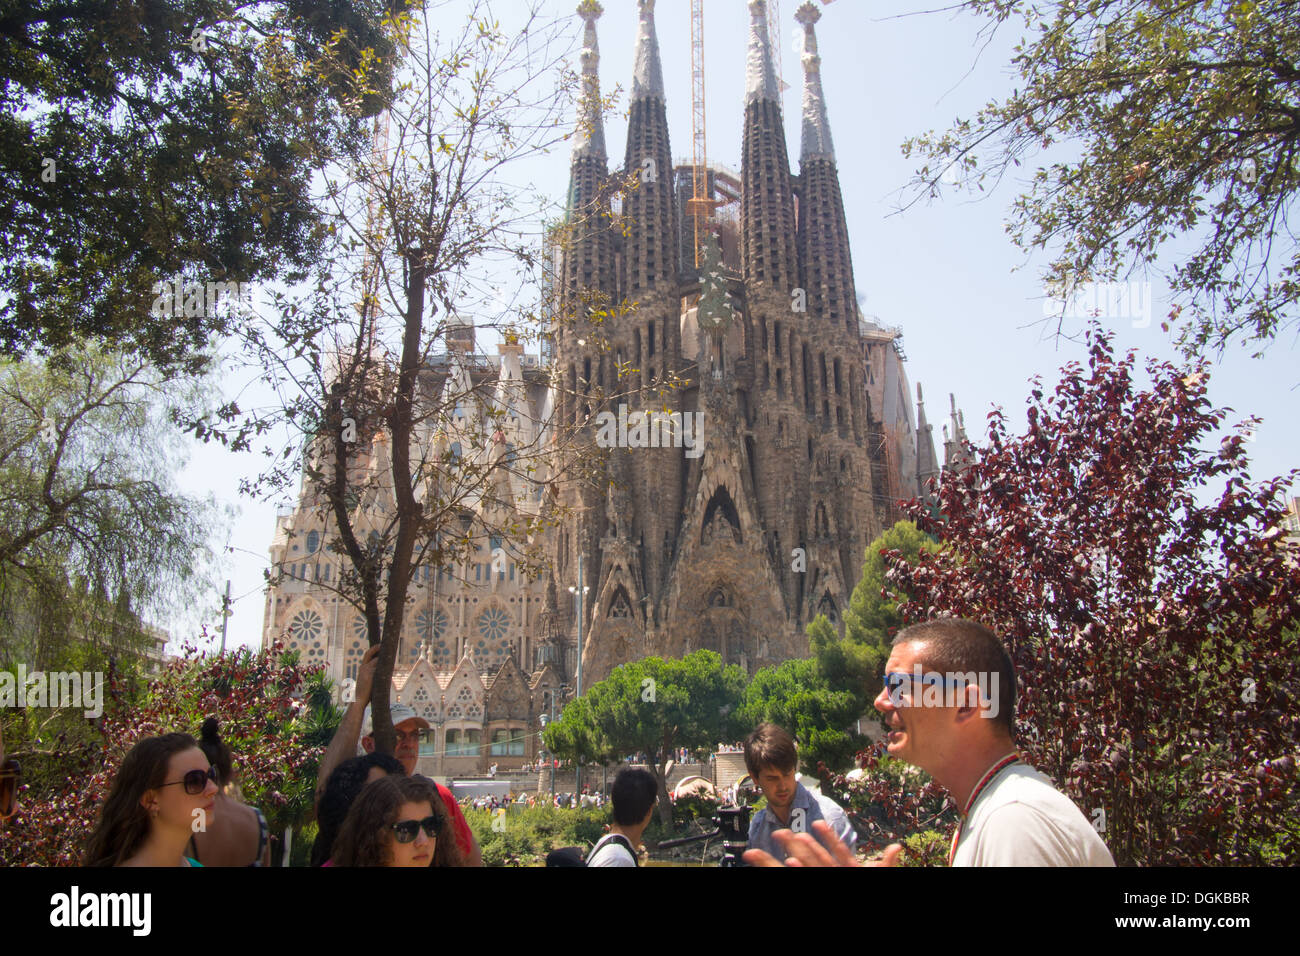 Guide touristique en face de Antoni Gaudi's "Sagrada Familia" (Sainte Famille), la cathédrale de Barcelone, Catalogne, Espagne Banque D'Images